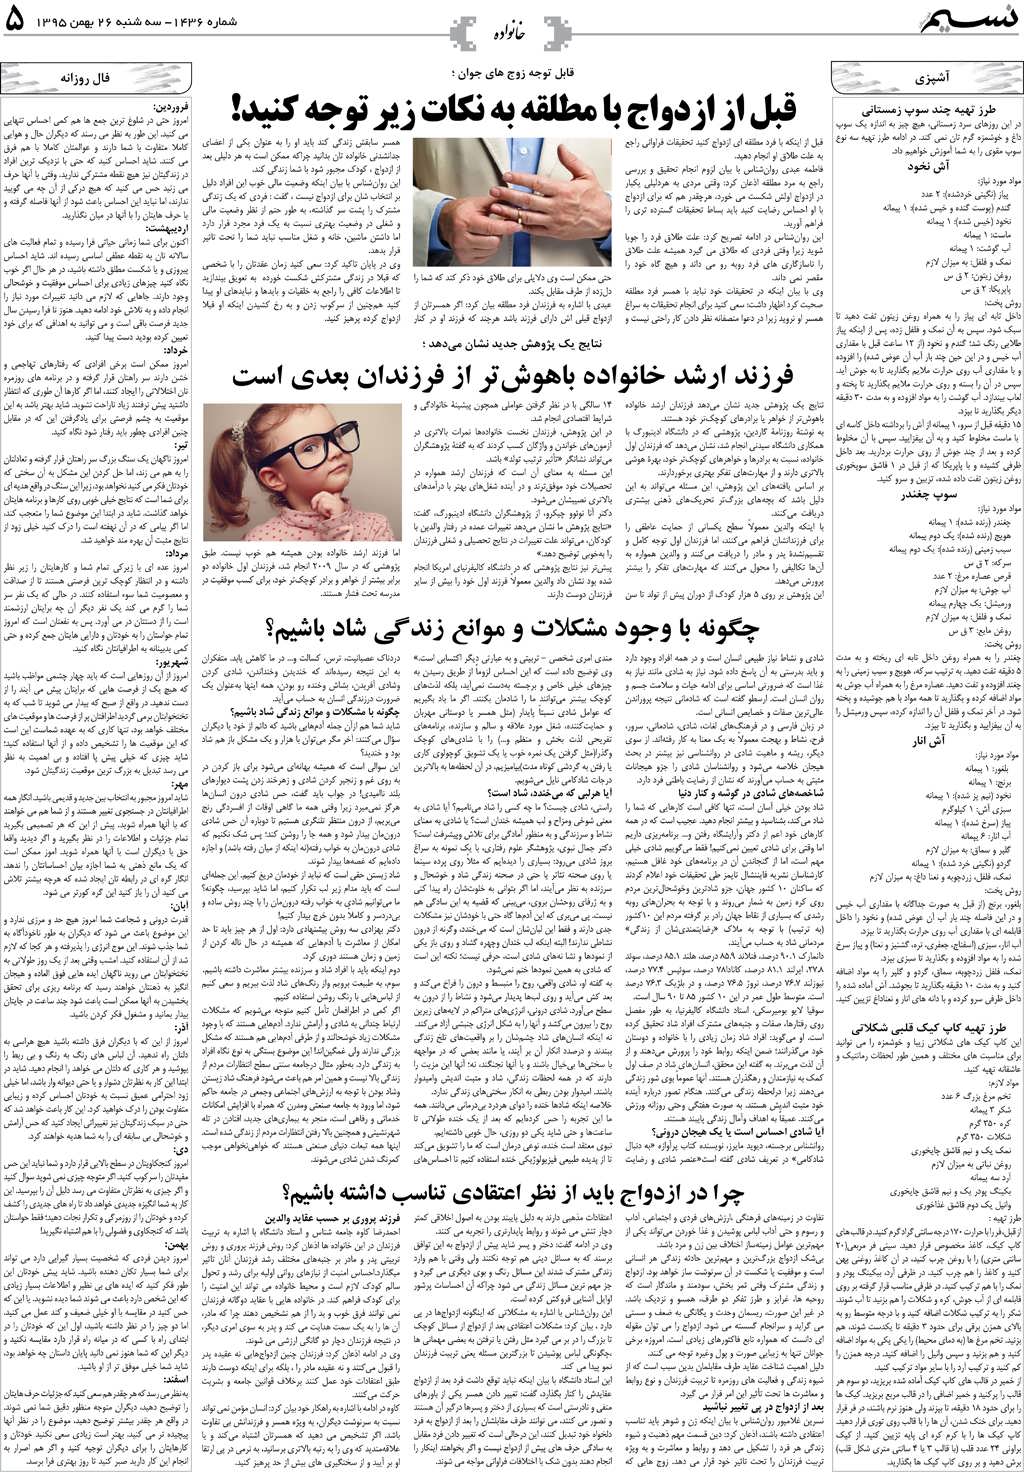 صفحه خانواده روزنامه نسیم شماره 1436